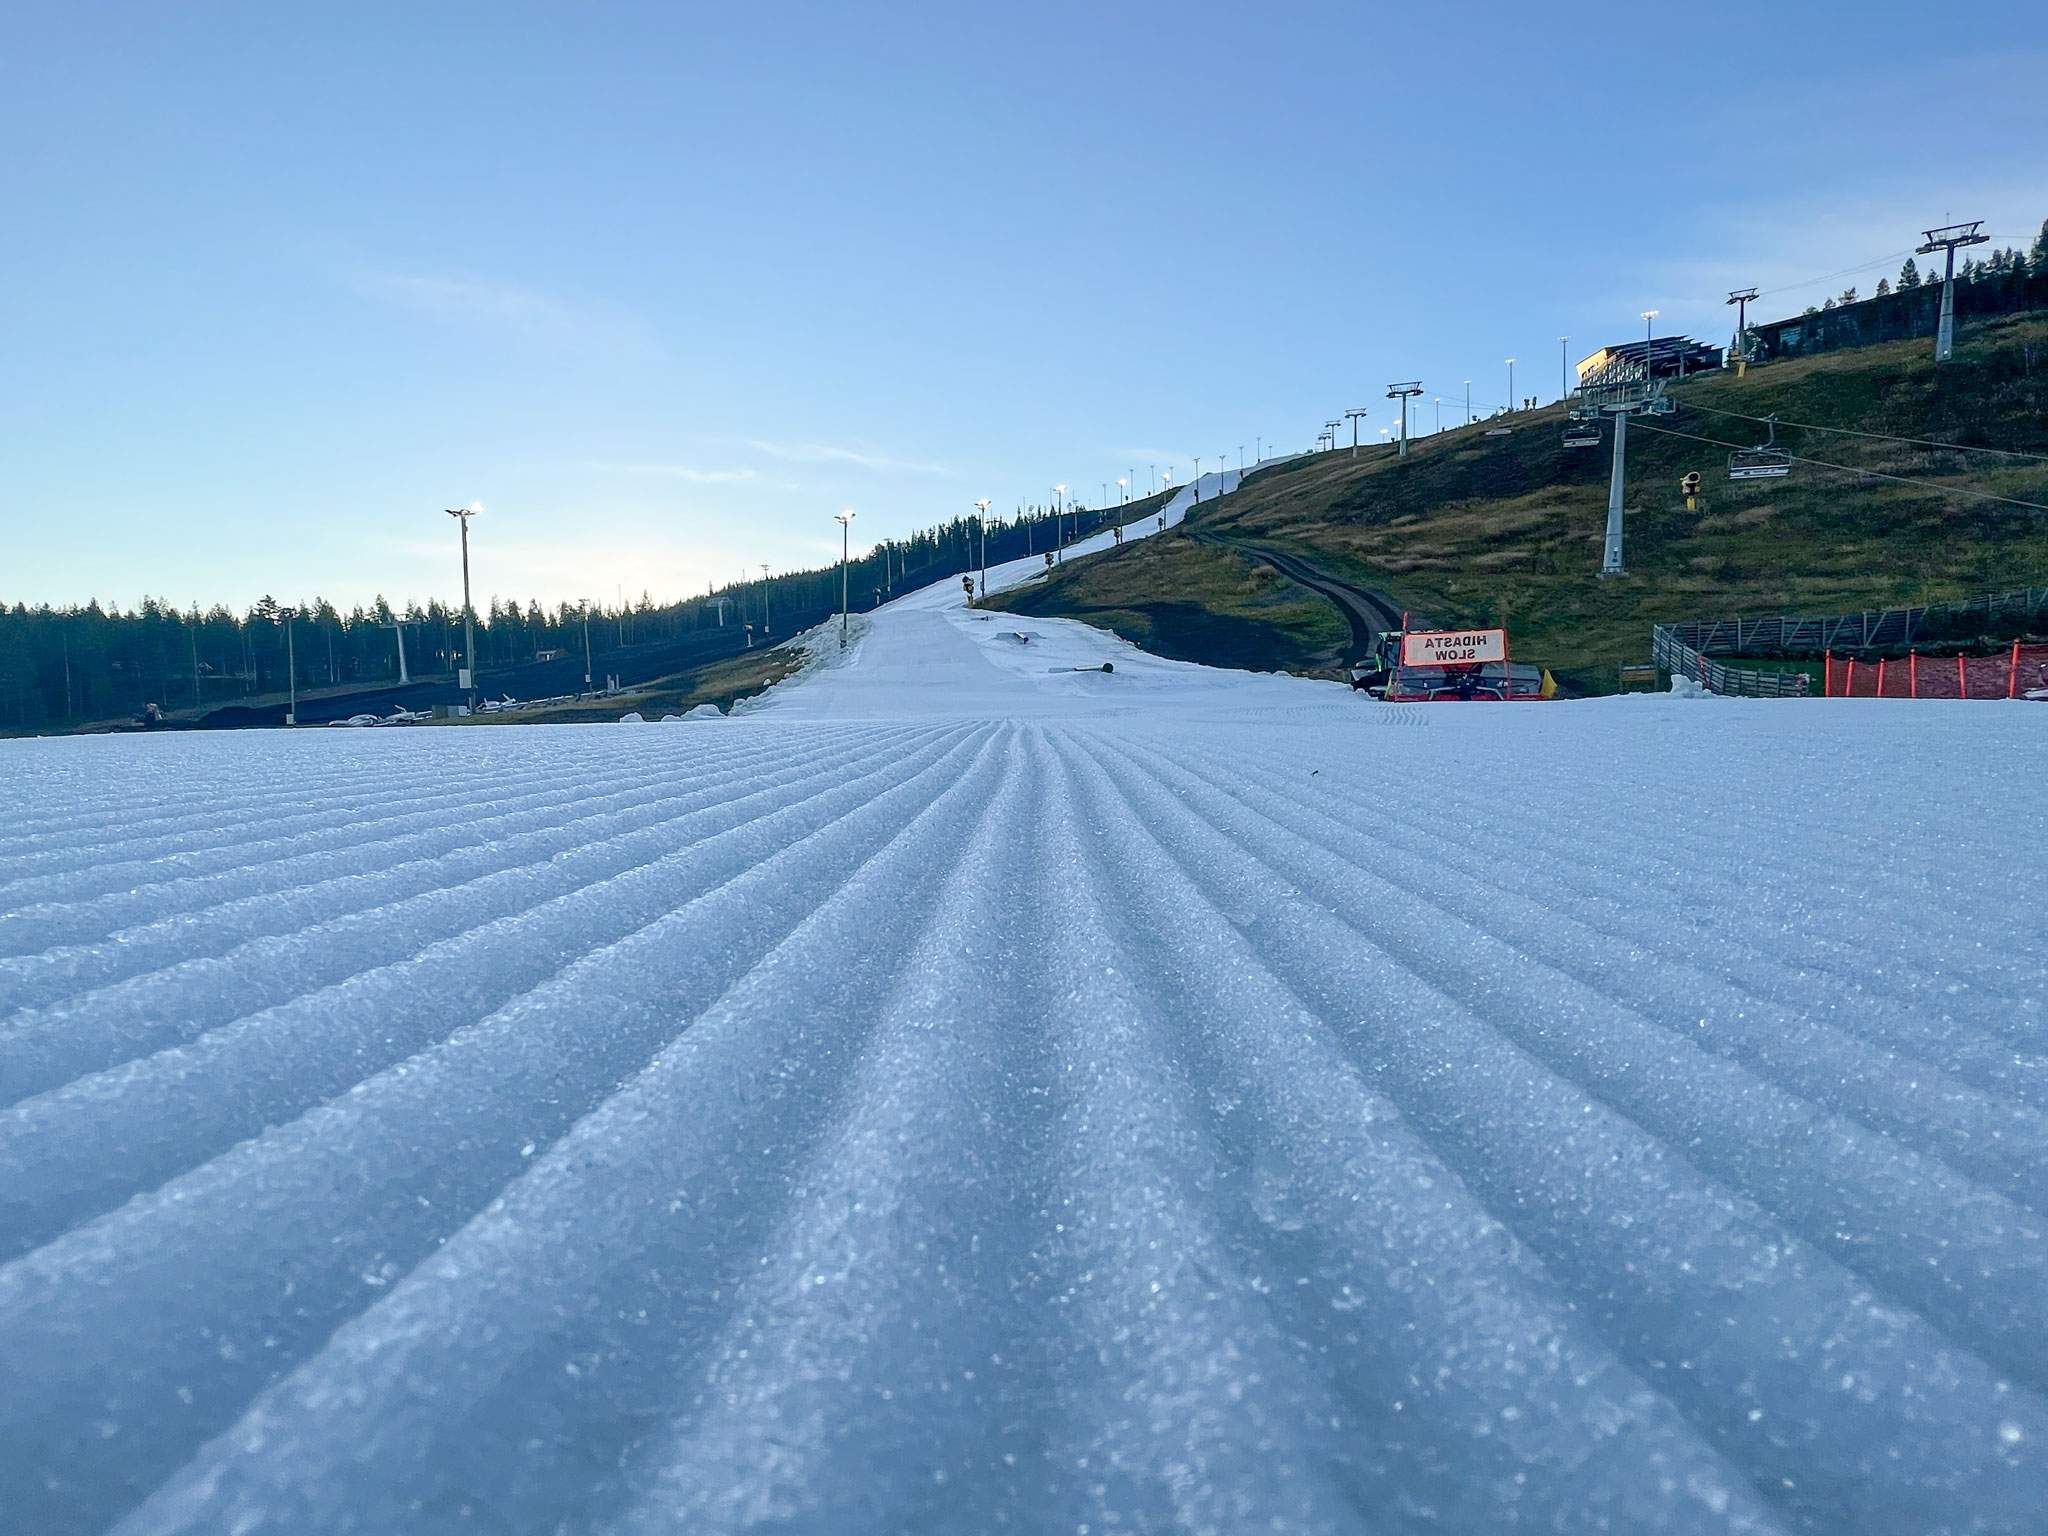 Arranca la temporada de esquí en Finlandia gracias al cultivo de nieve